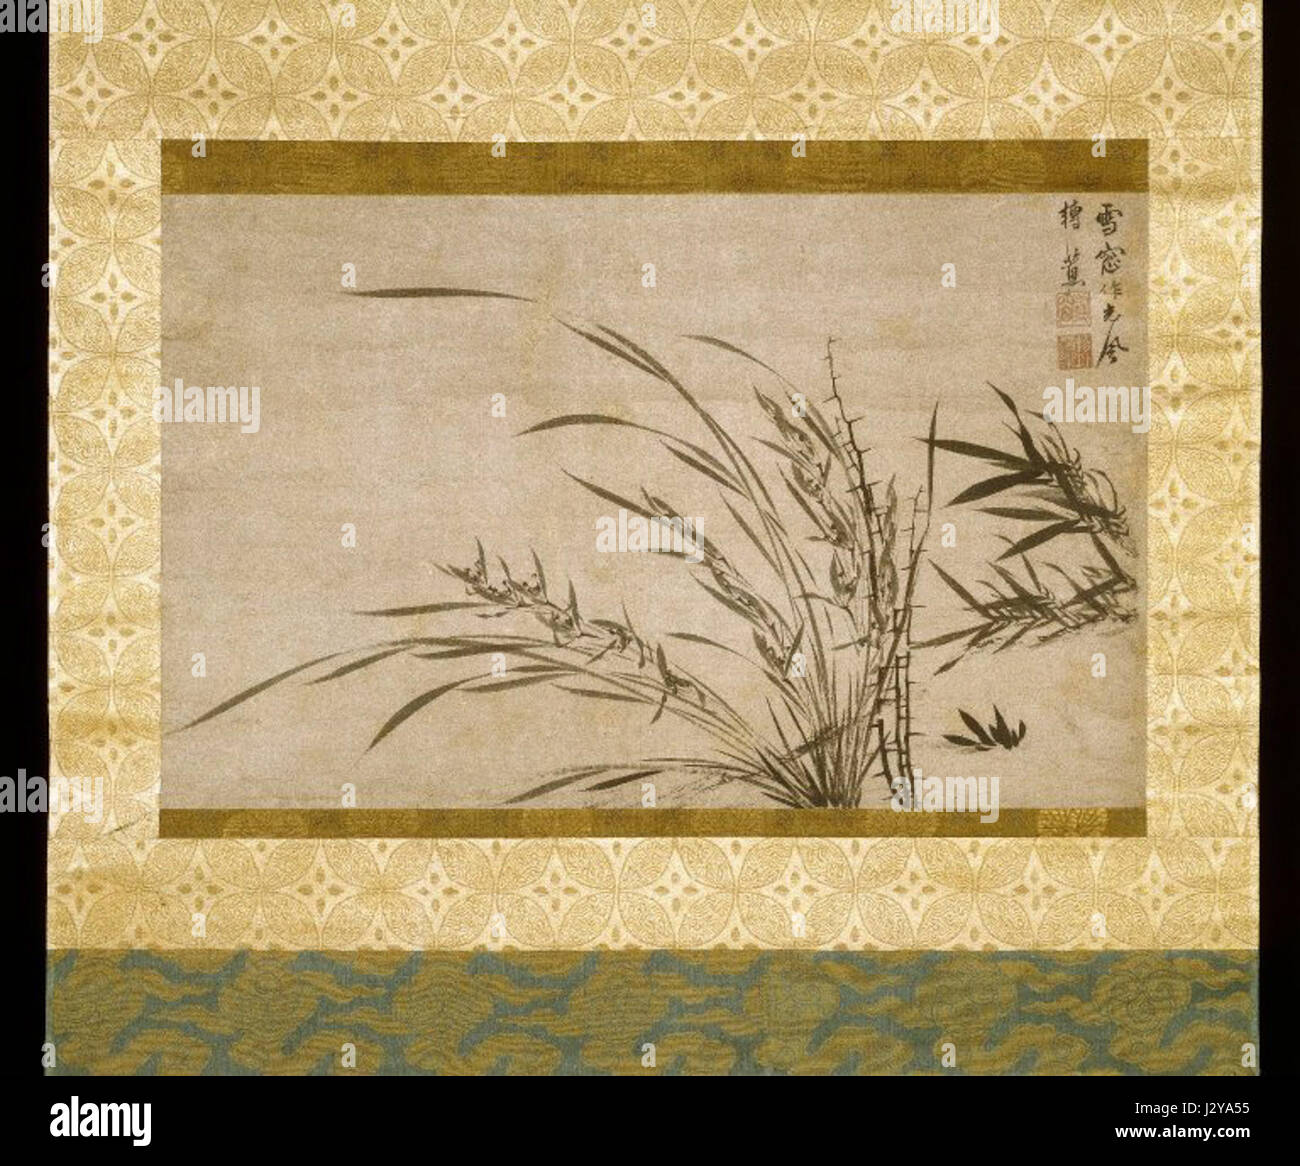 Brooklyn Museum - Fragment einer Pergamentrolle als einer hängenden Schriftrolle - Bambus Orchidee und Thorn - Hsueh Ch'uang montiert Stockfoto